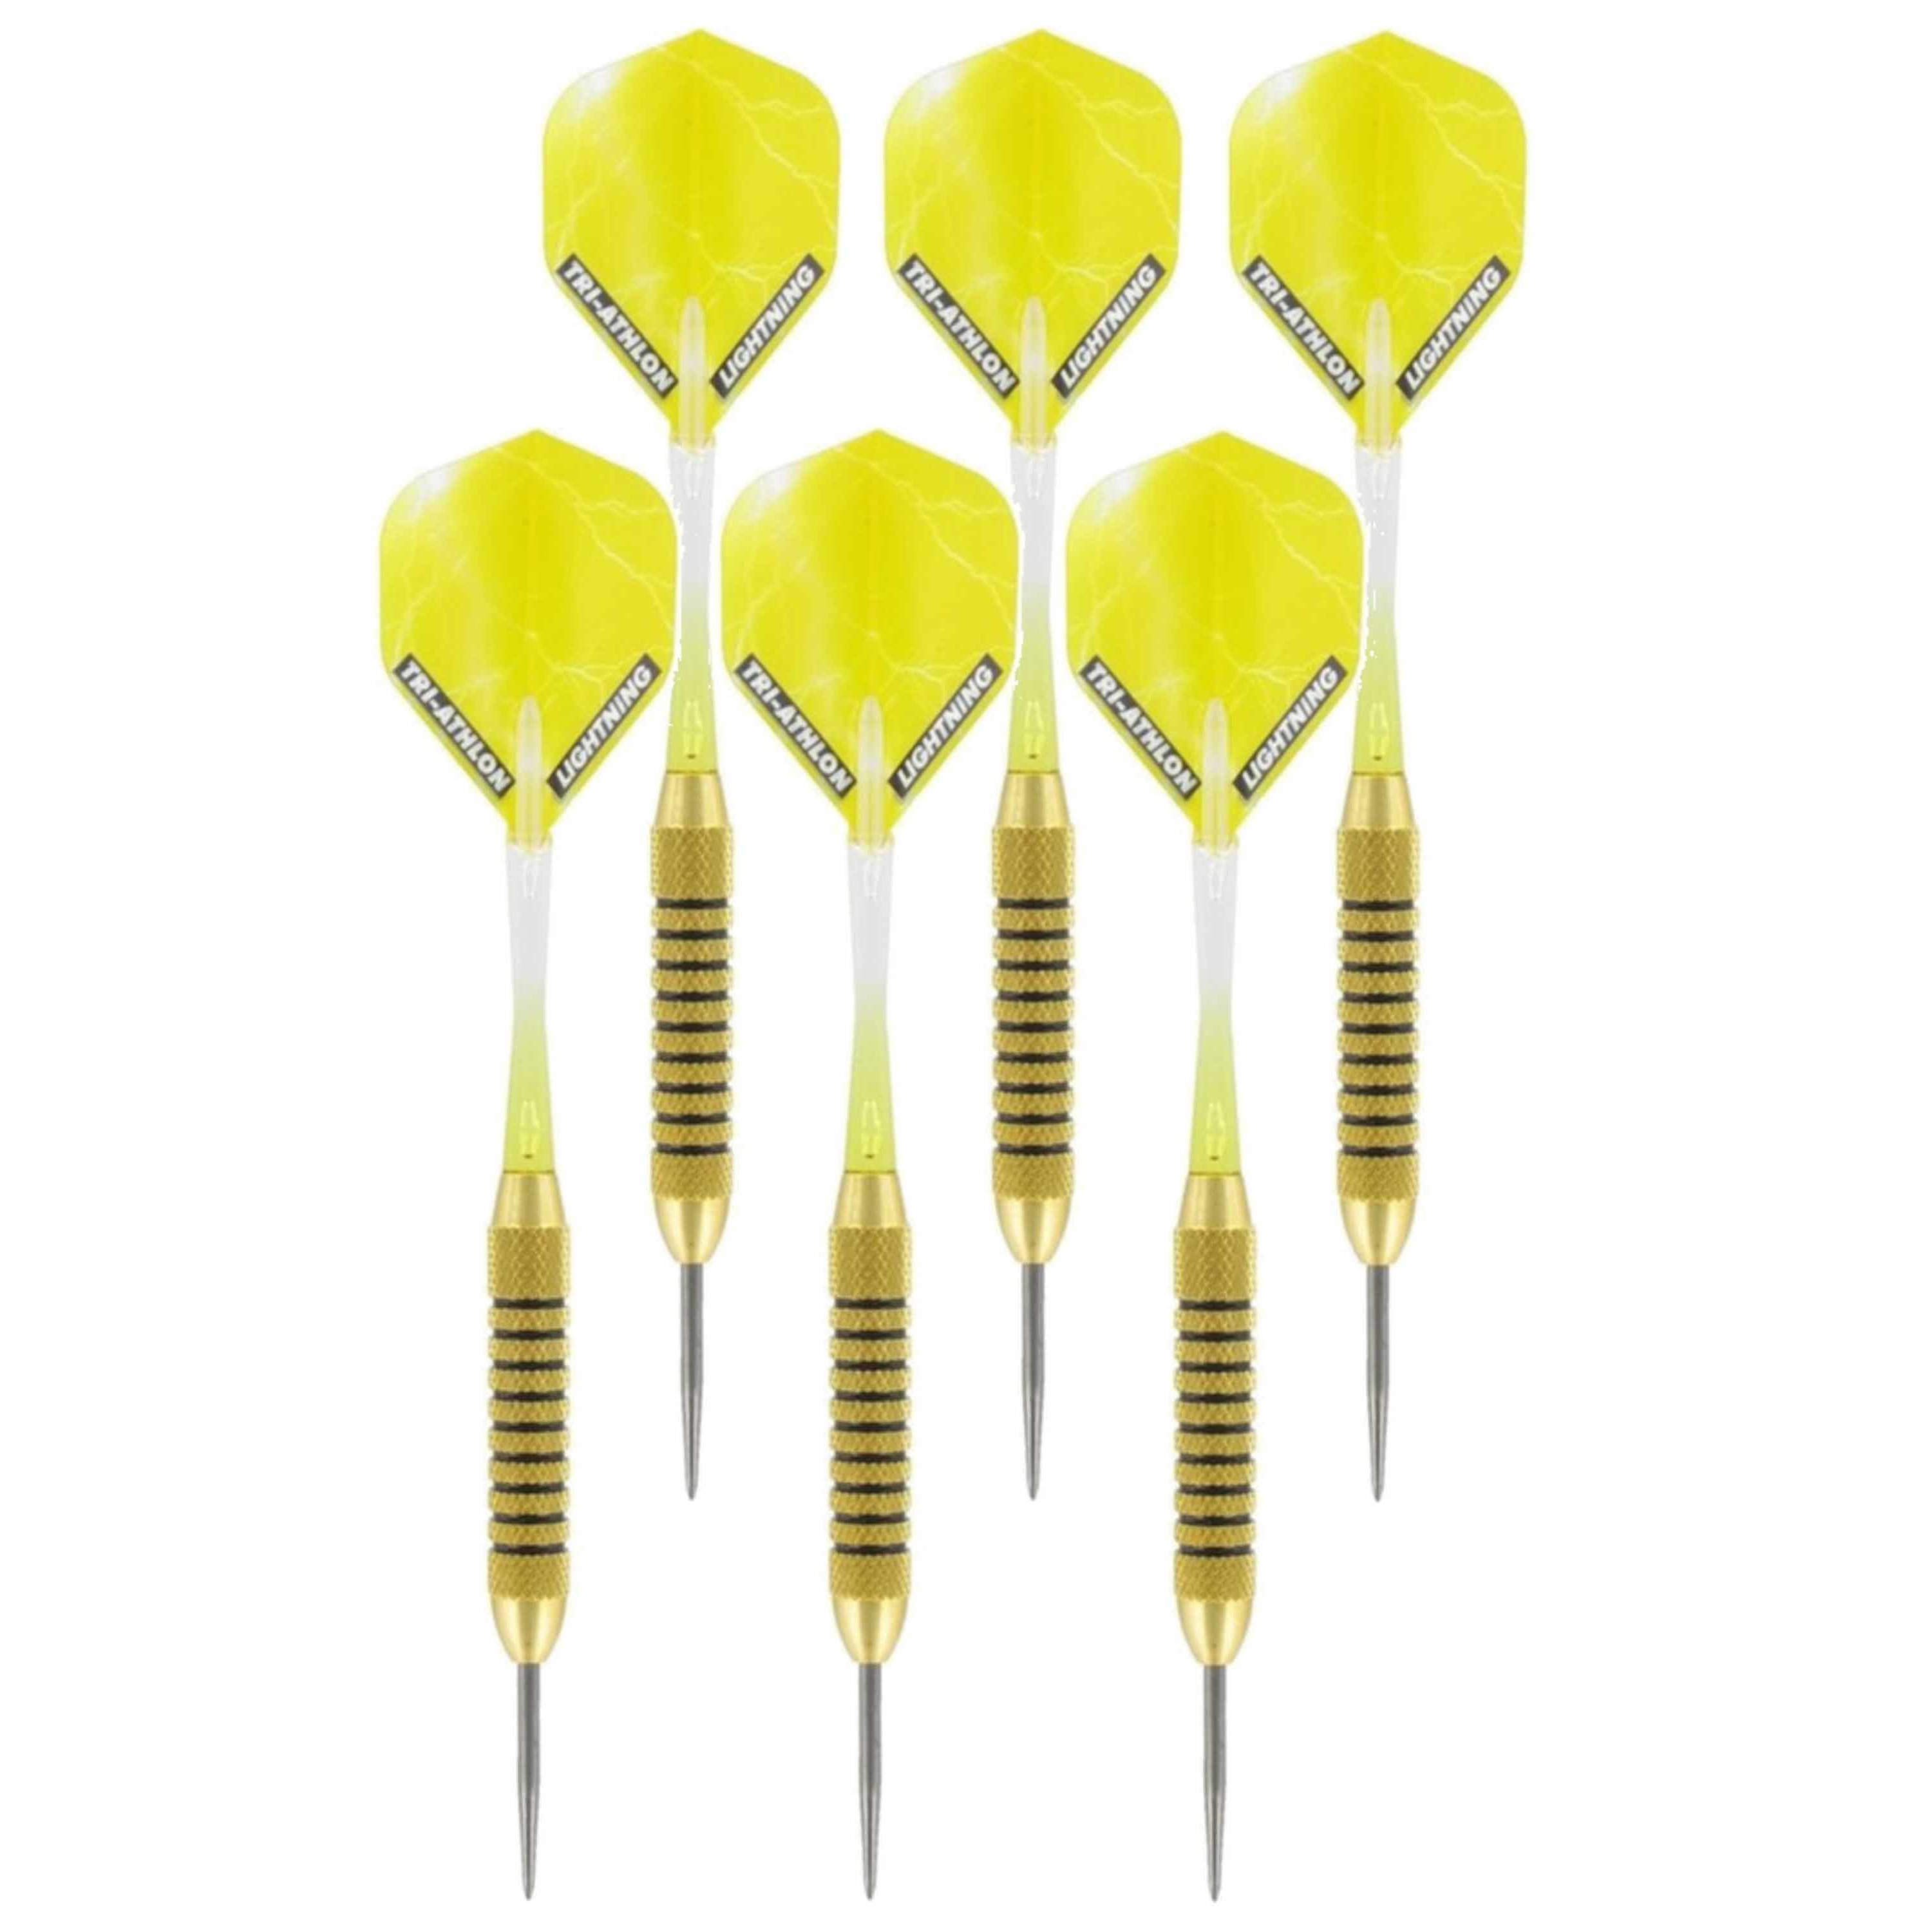 2x Set van dartpijltjes Speedy Yellow Brass met Metallic Lightning flites 21 grams